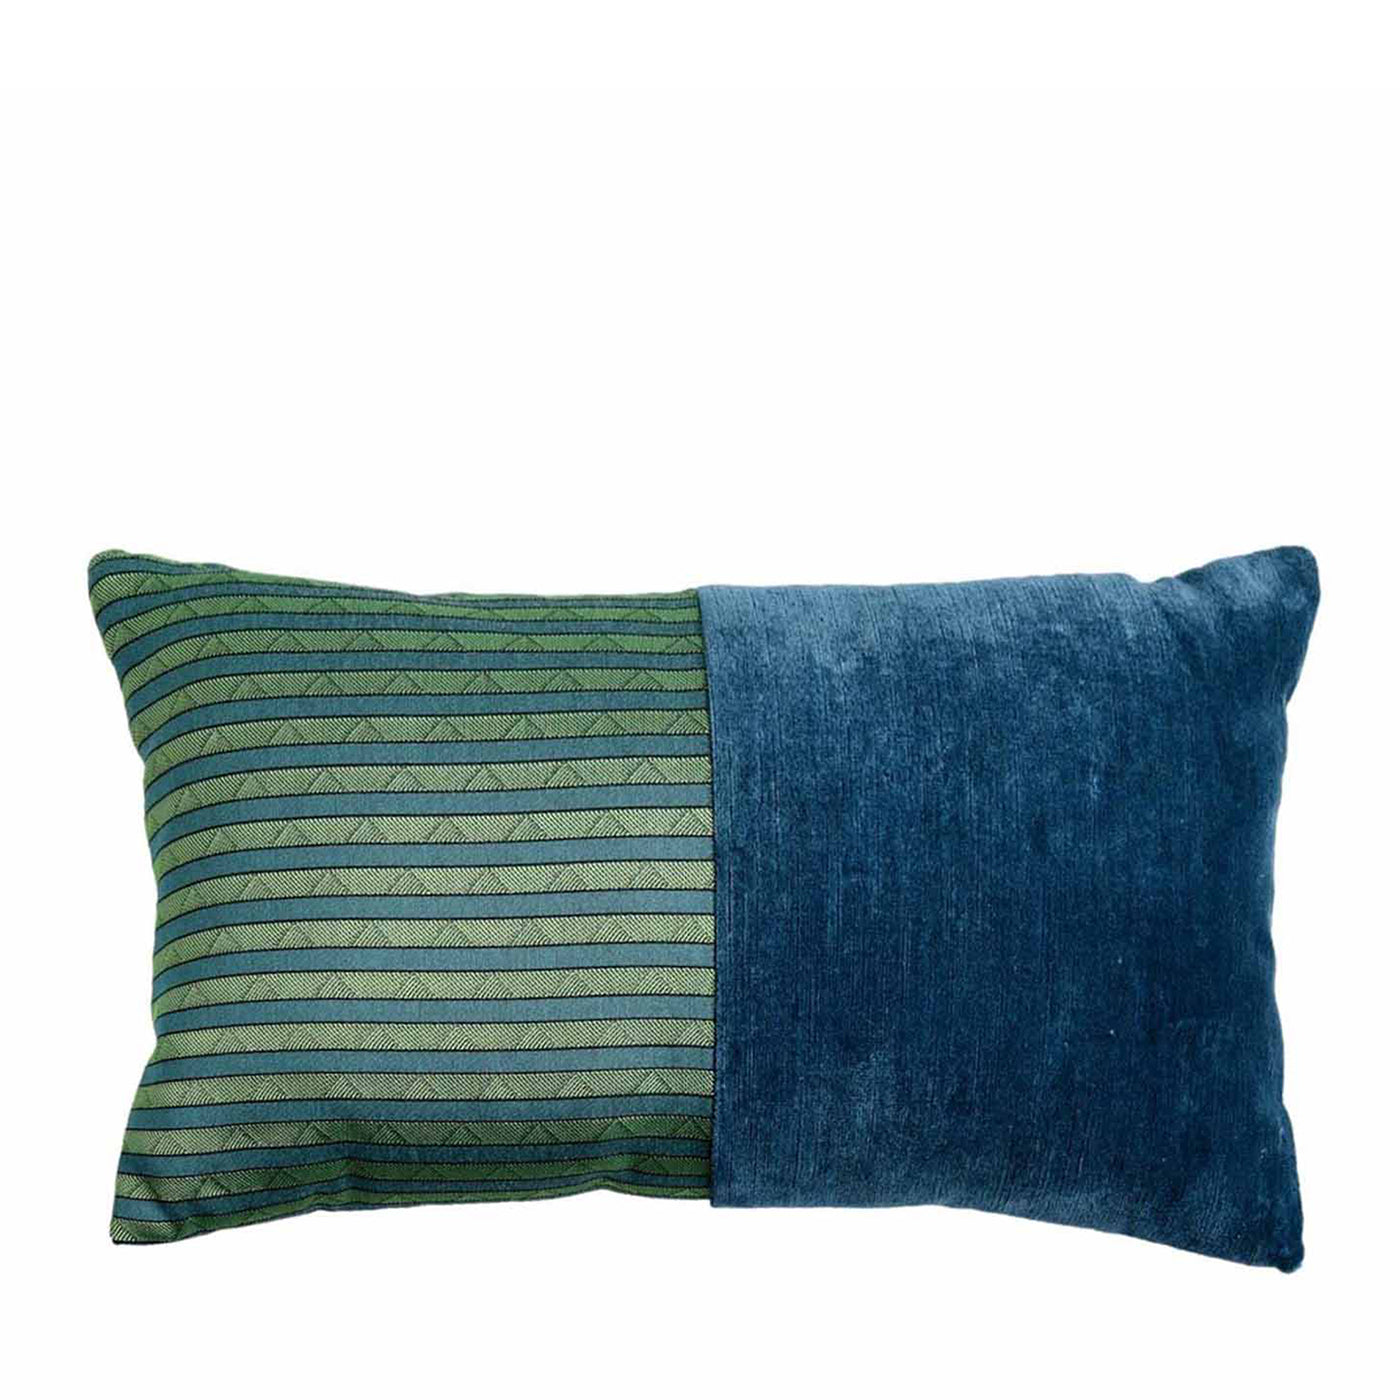 Cuscino Bis rettangolare blu smeraldo - Vista principale